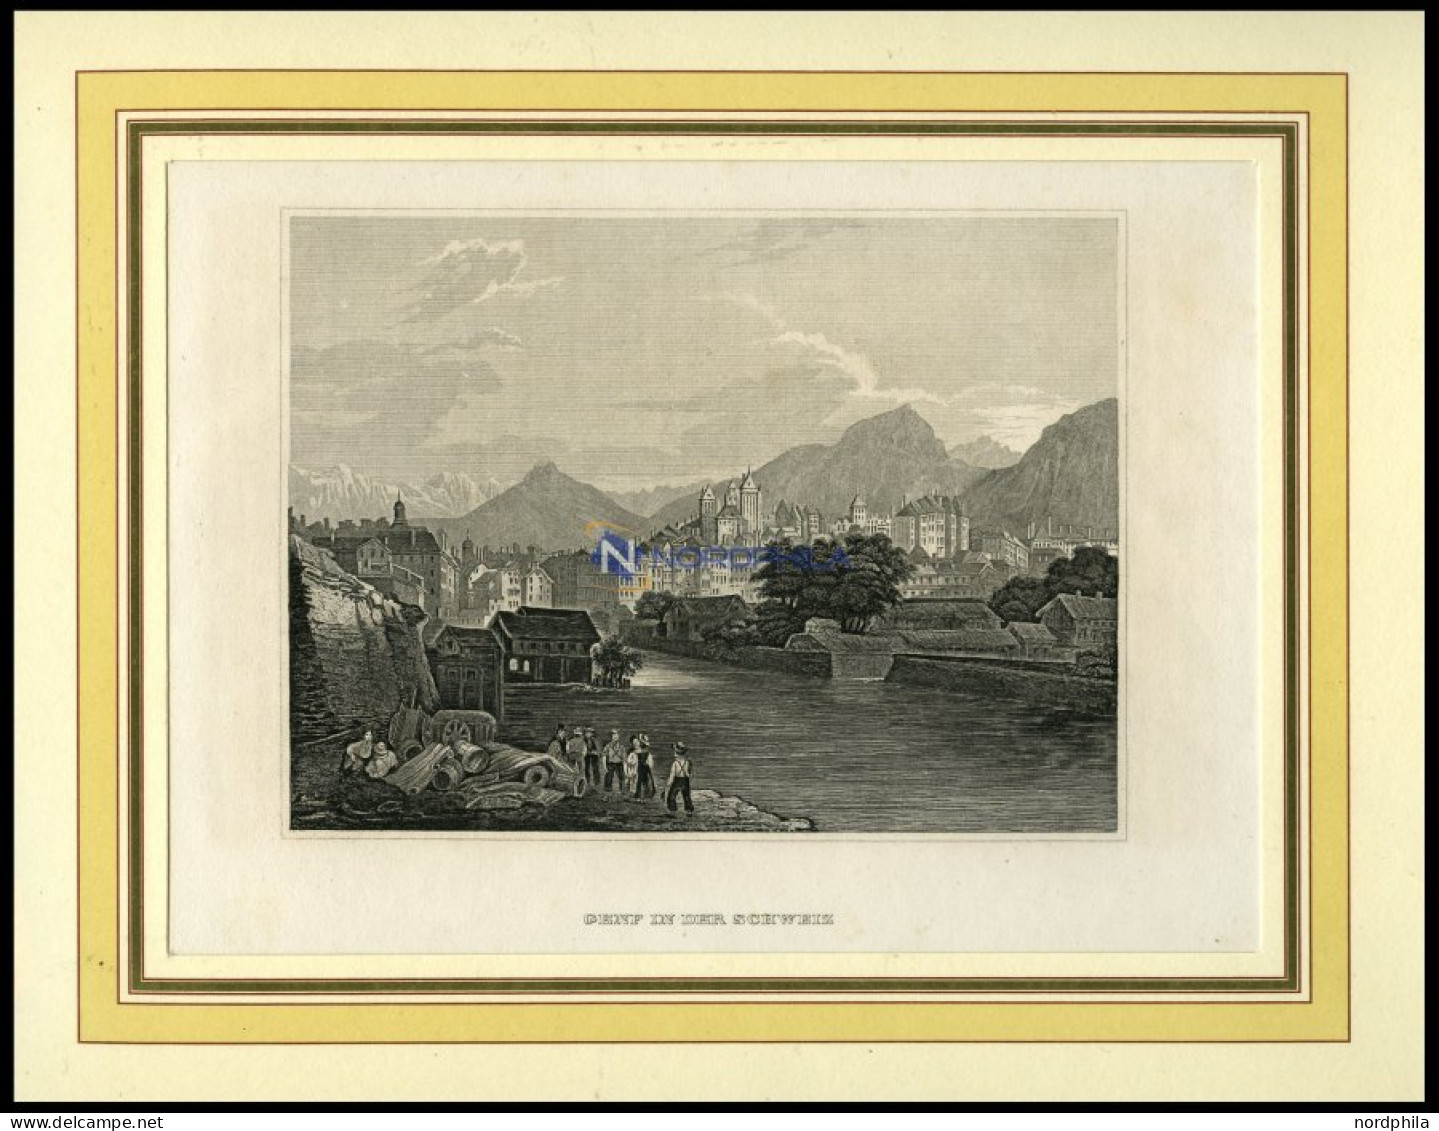 GENF, Gesamtansicht, Stahlstich Von B.I. Um 1860 - Litografía